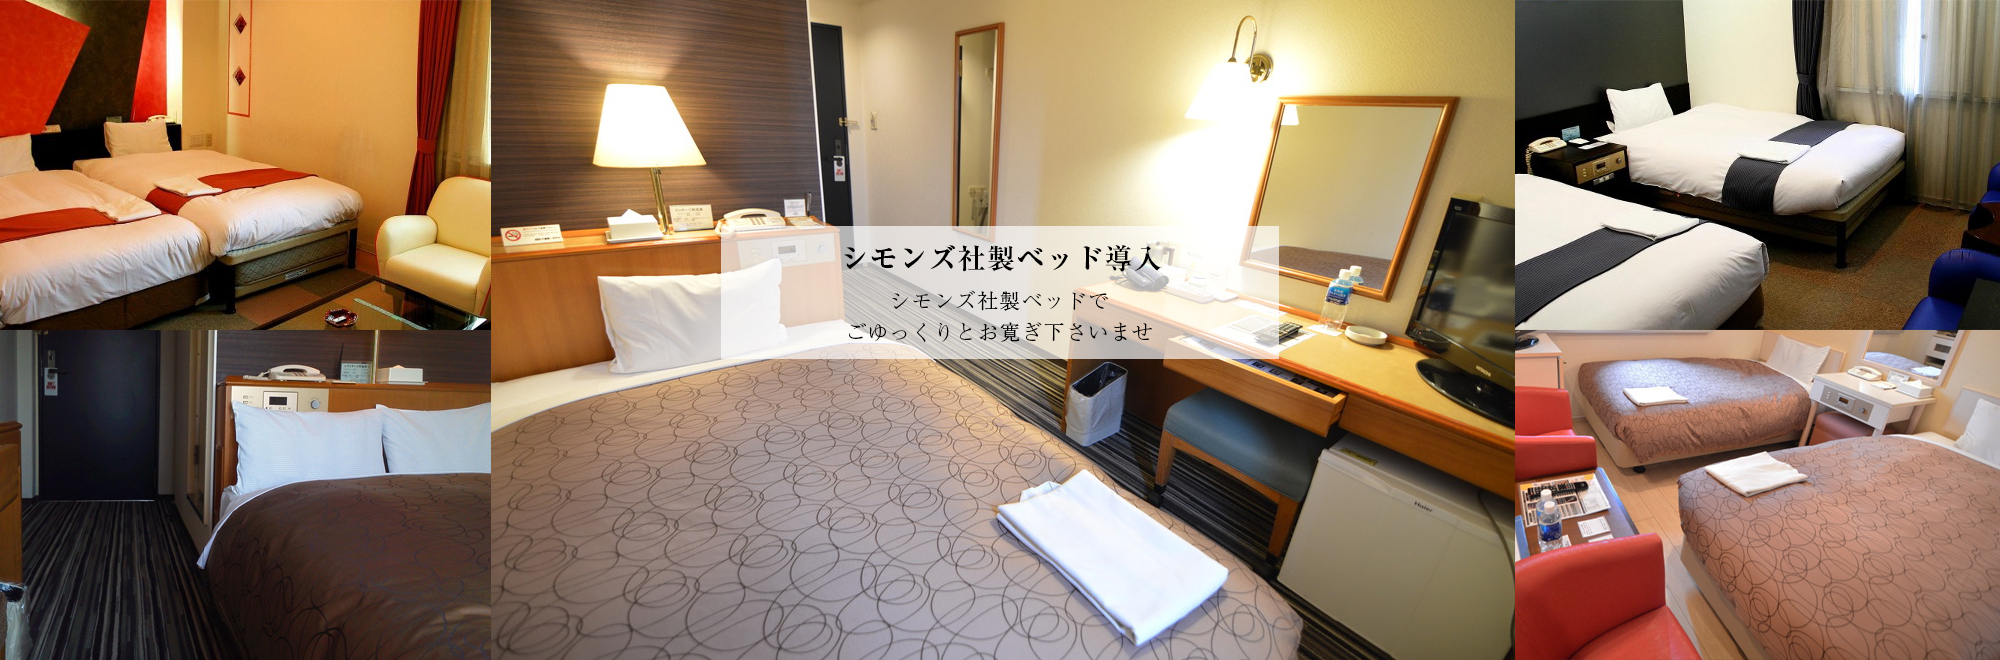 千歳第一ホテルは主要箇所へのアクセス良好。新千歳空港からタクシーで約10分、札幌までJRで約30分。JR千歳駅までは徒歩で6分の立地条件